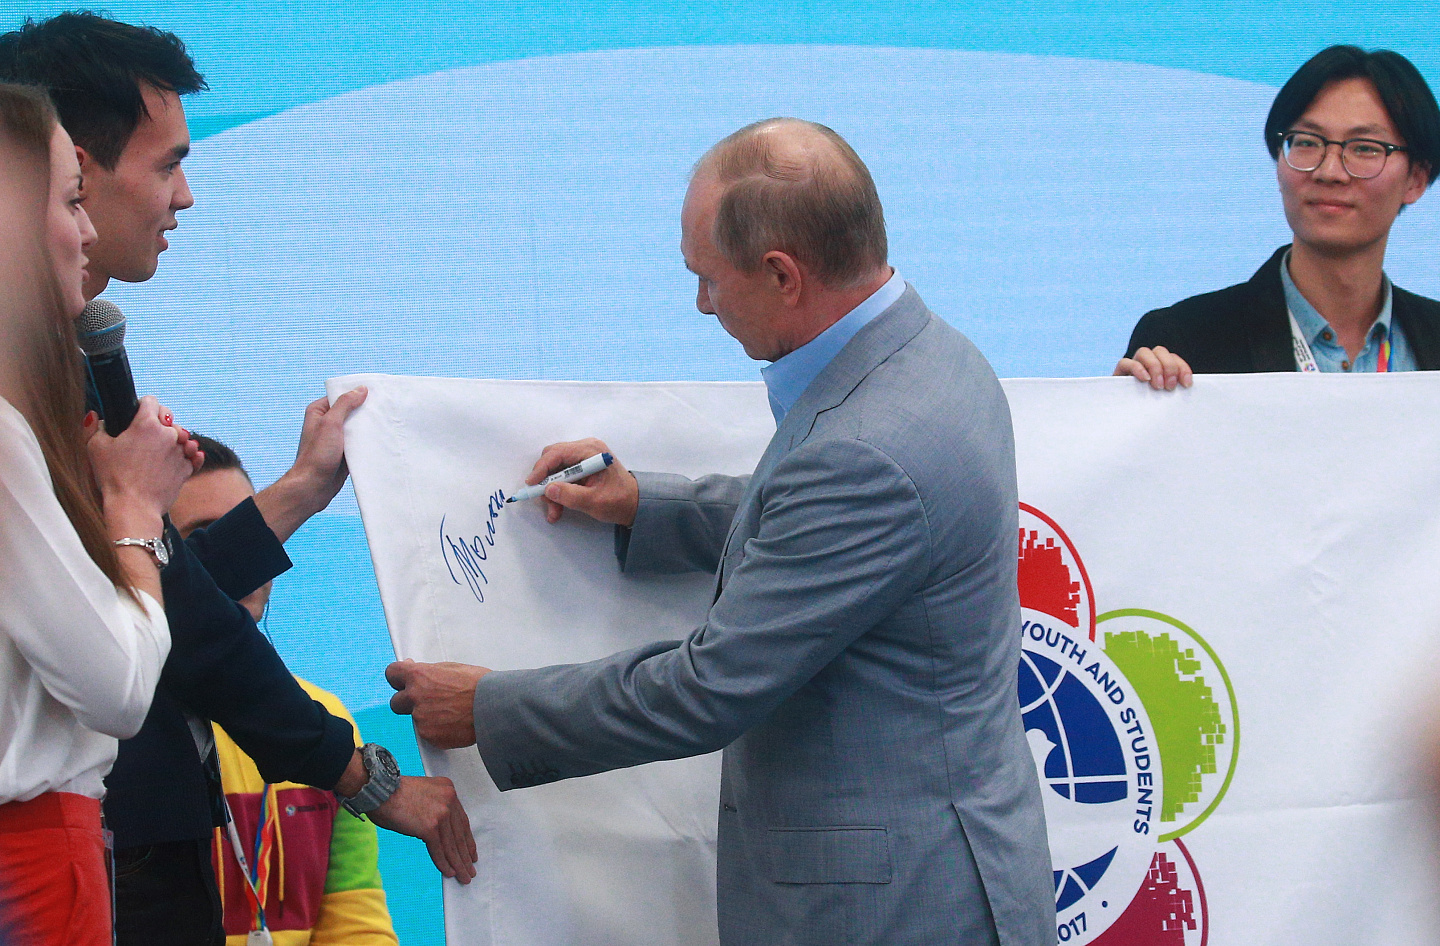 Soft skills и генная инженерия: Владимир Путин на сессии «Молодежь 2030. Образ будущего» обозначил ключевые направления развития человечества